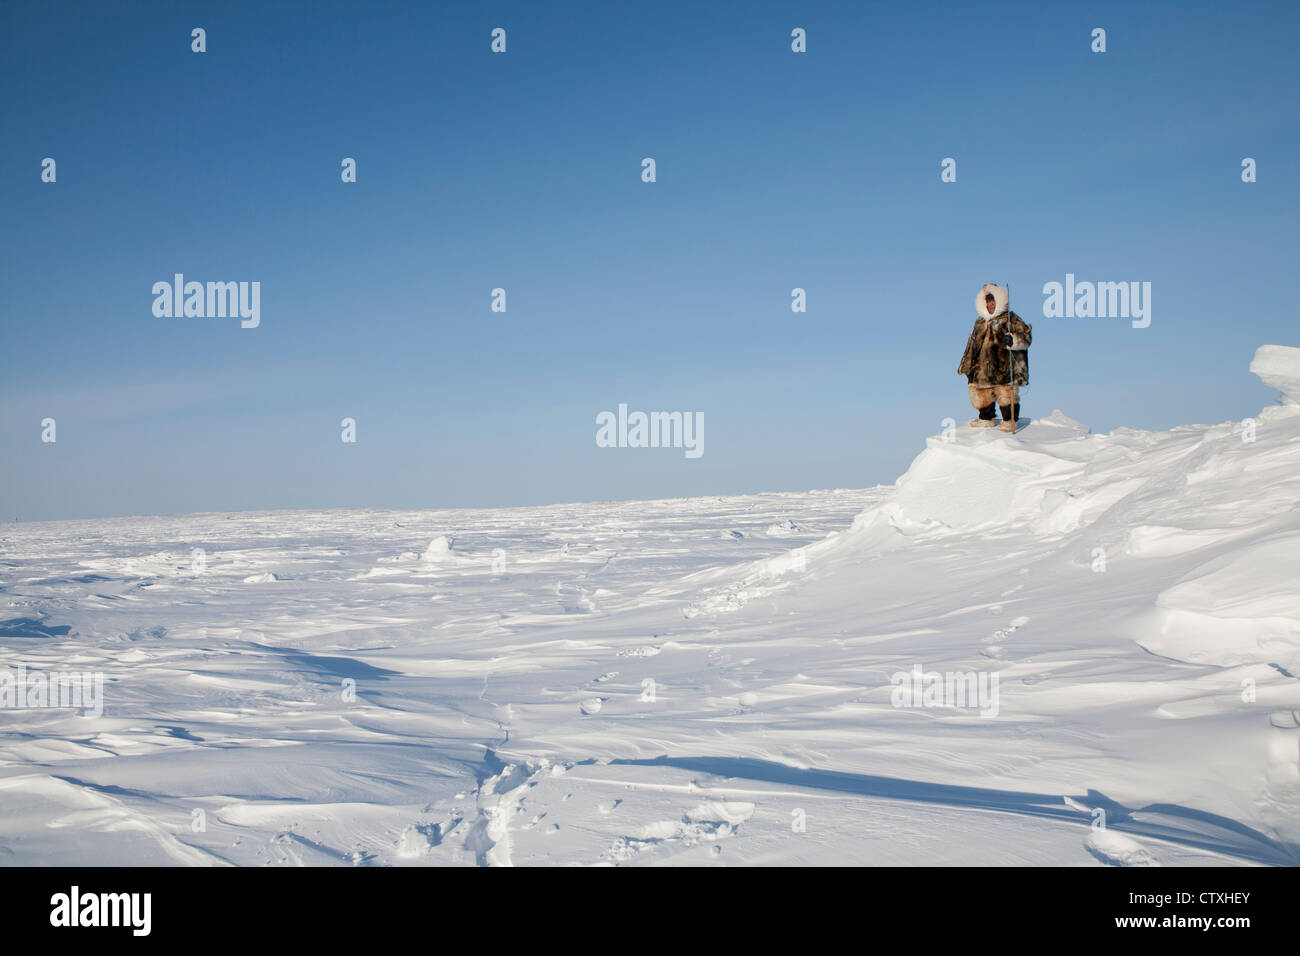 Los inuits están cazando en el northpole Foto de stock